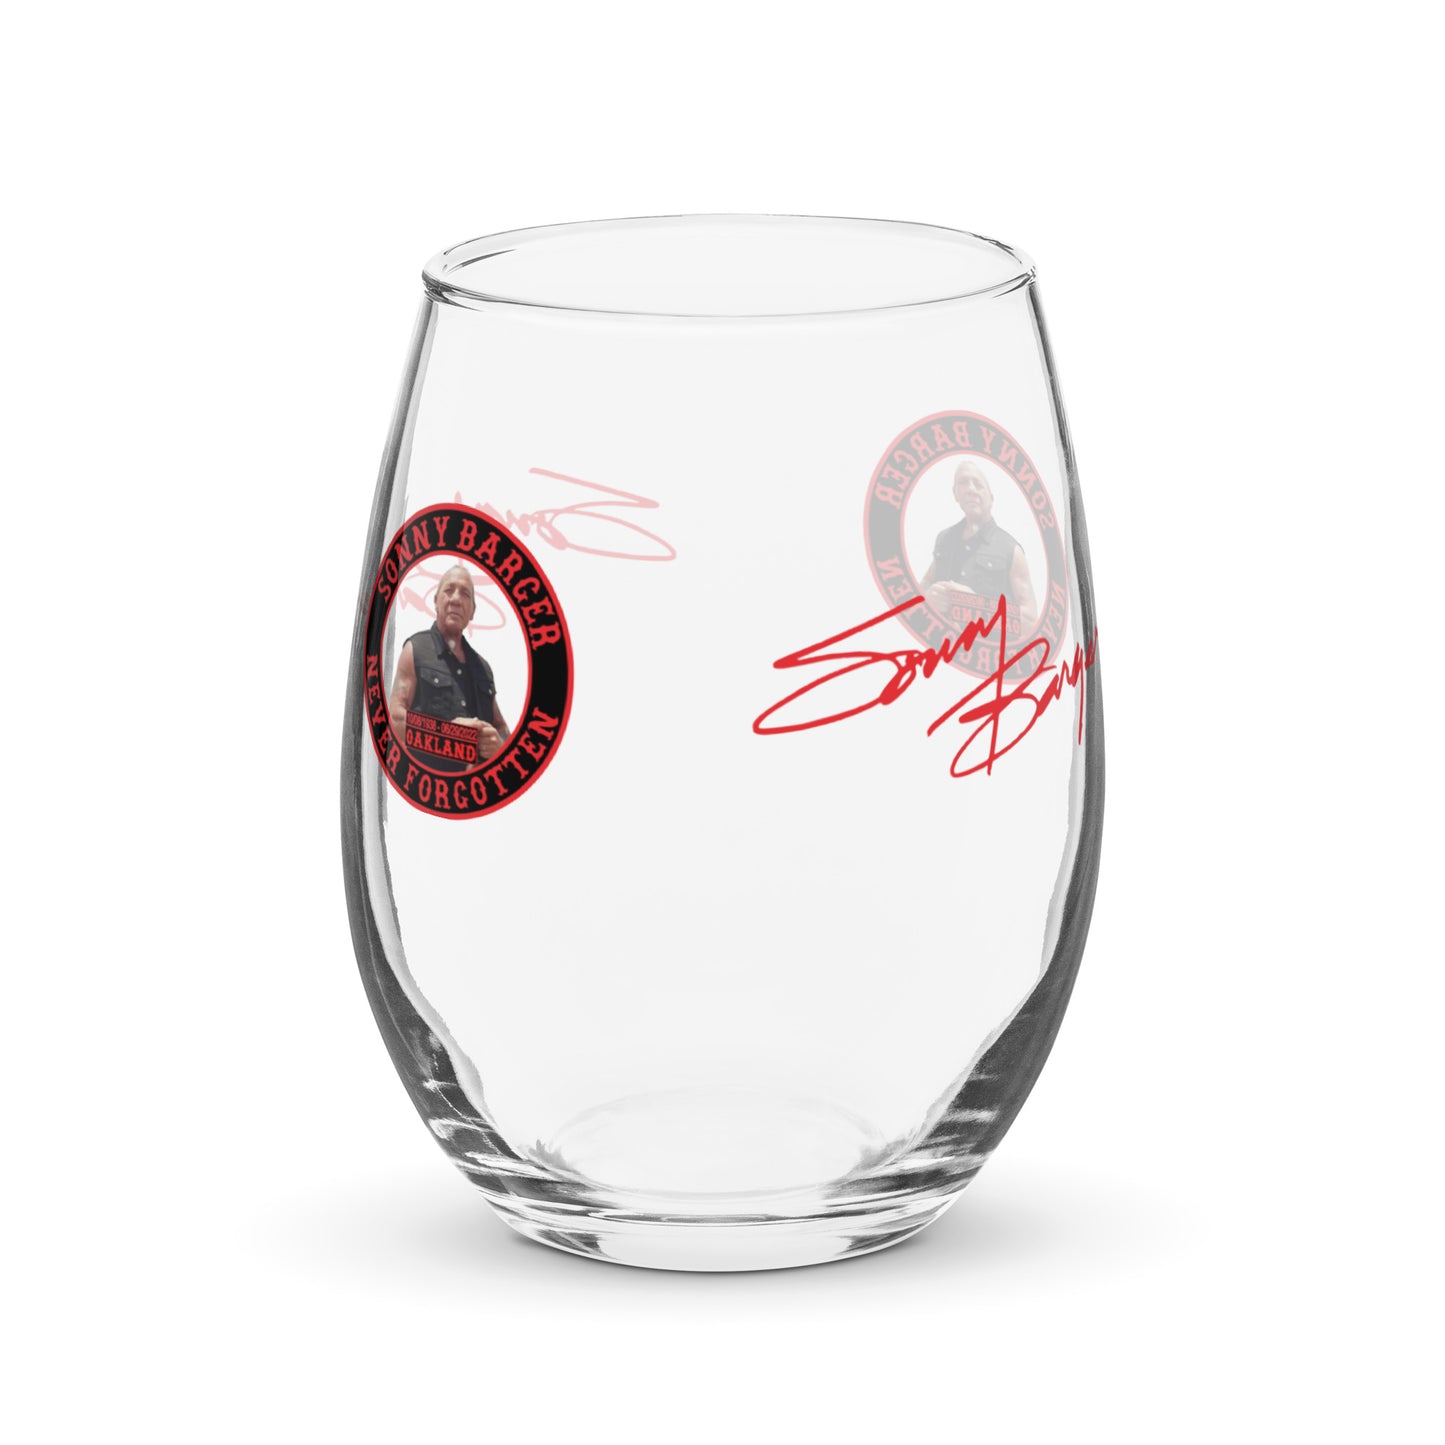 Sonny Barger Never Forgotten -Stemless wine glass